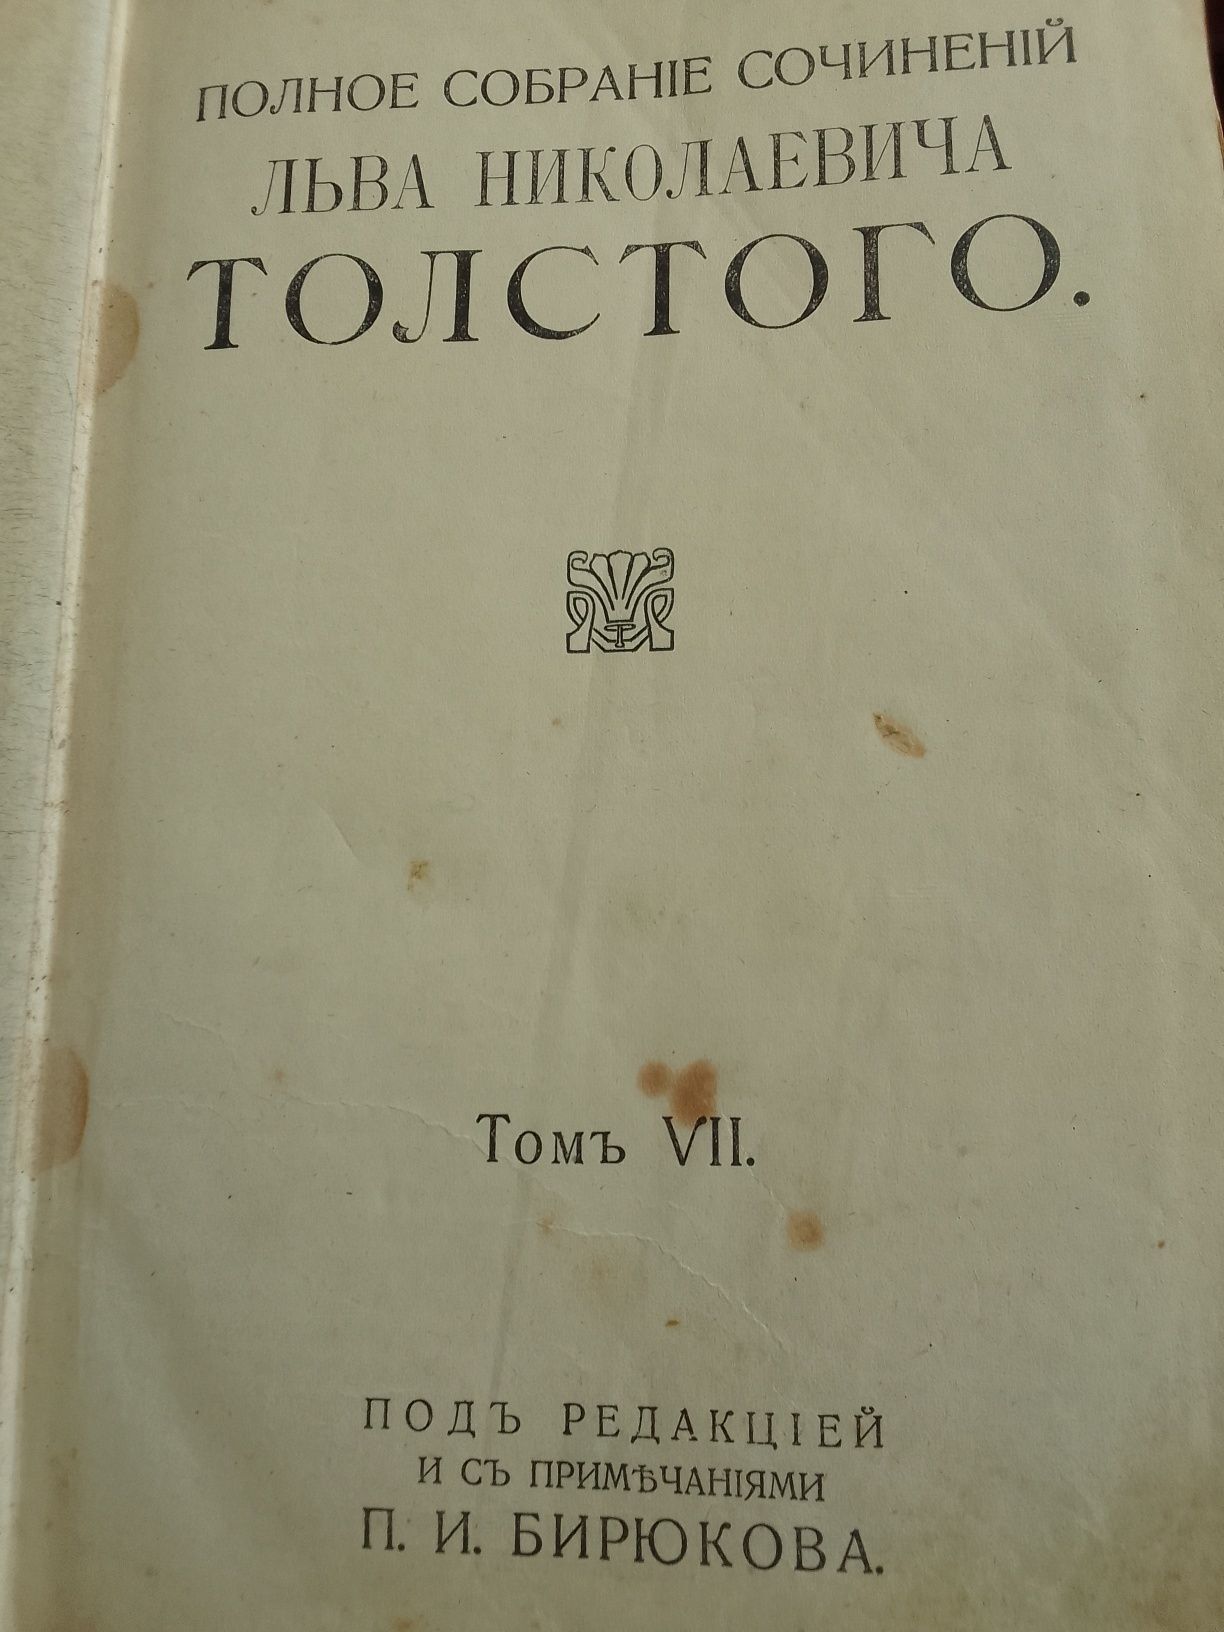 Полное собрание соч.Л.Н.Толстого 7-8  том .1913 г.издания.